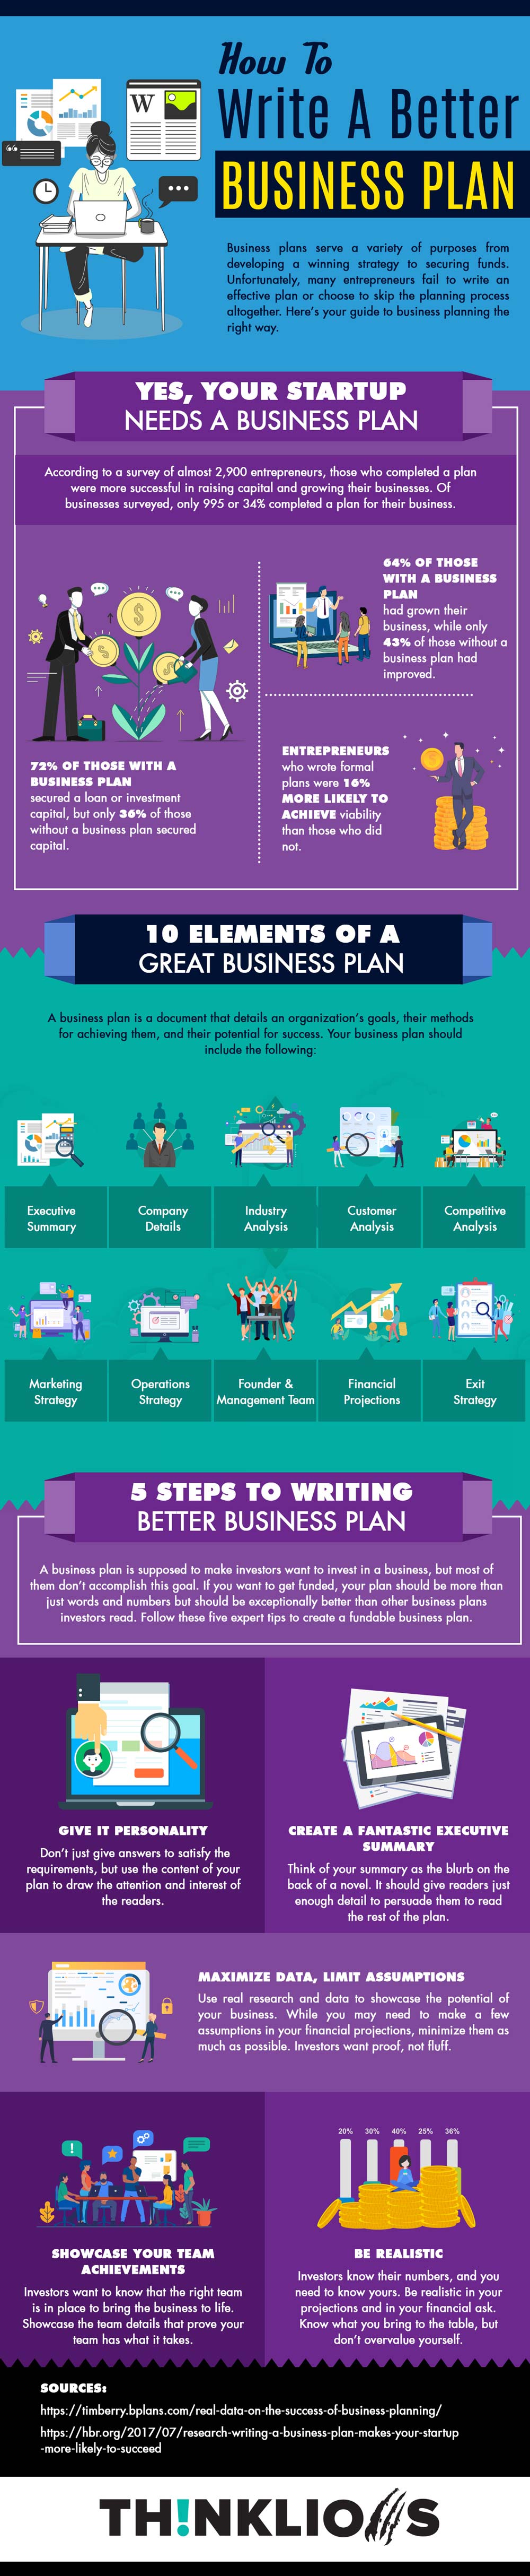 Infographic hoe schrijf je een beter bedrijfsplan